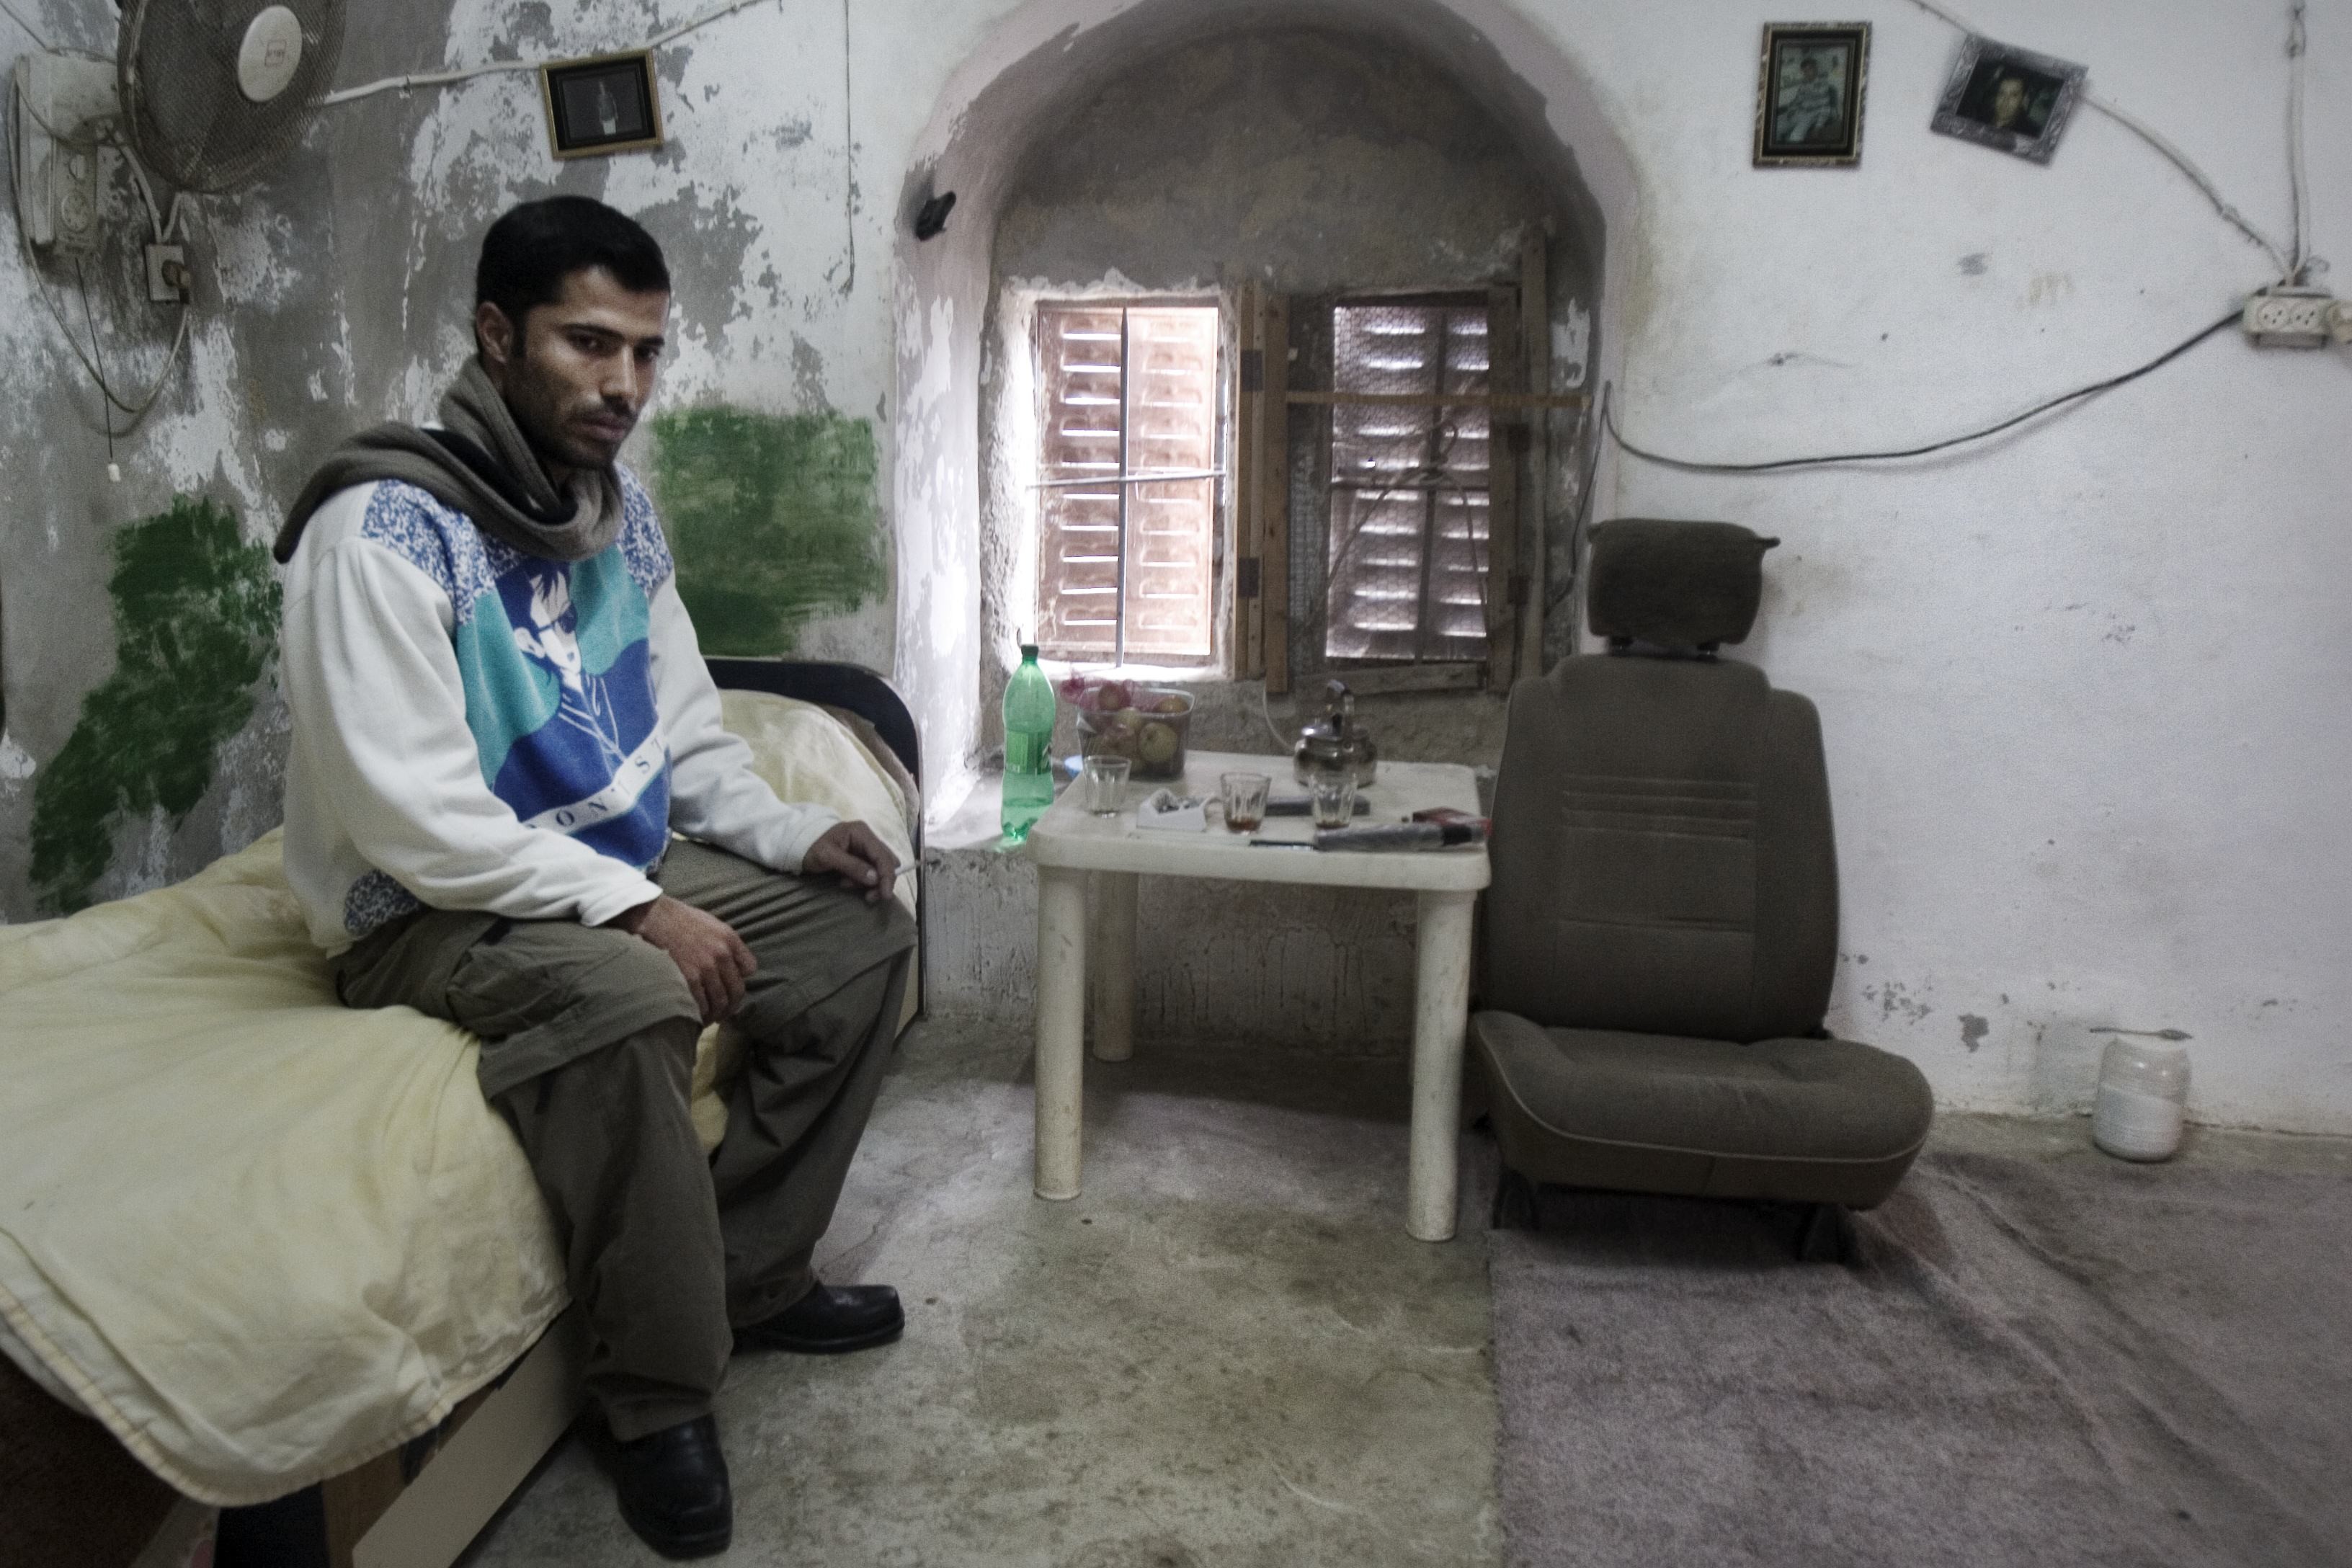 Casa palestinese dopo i bombardamenti